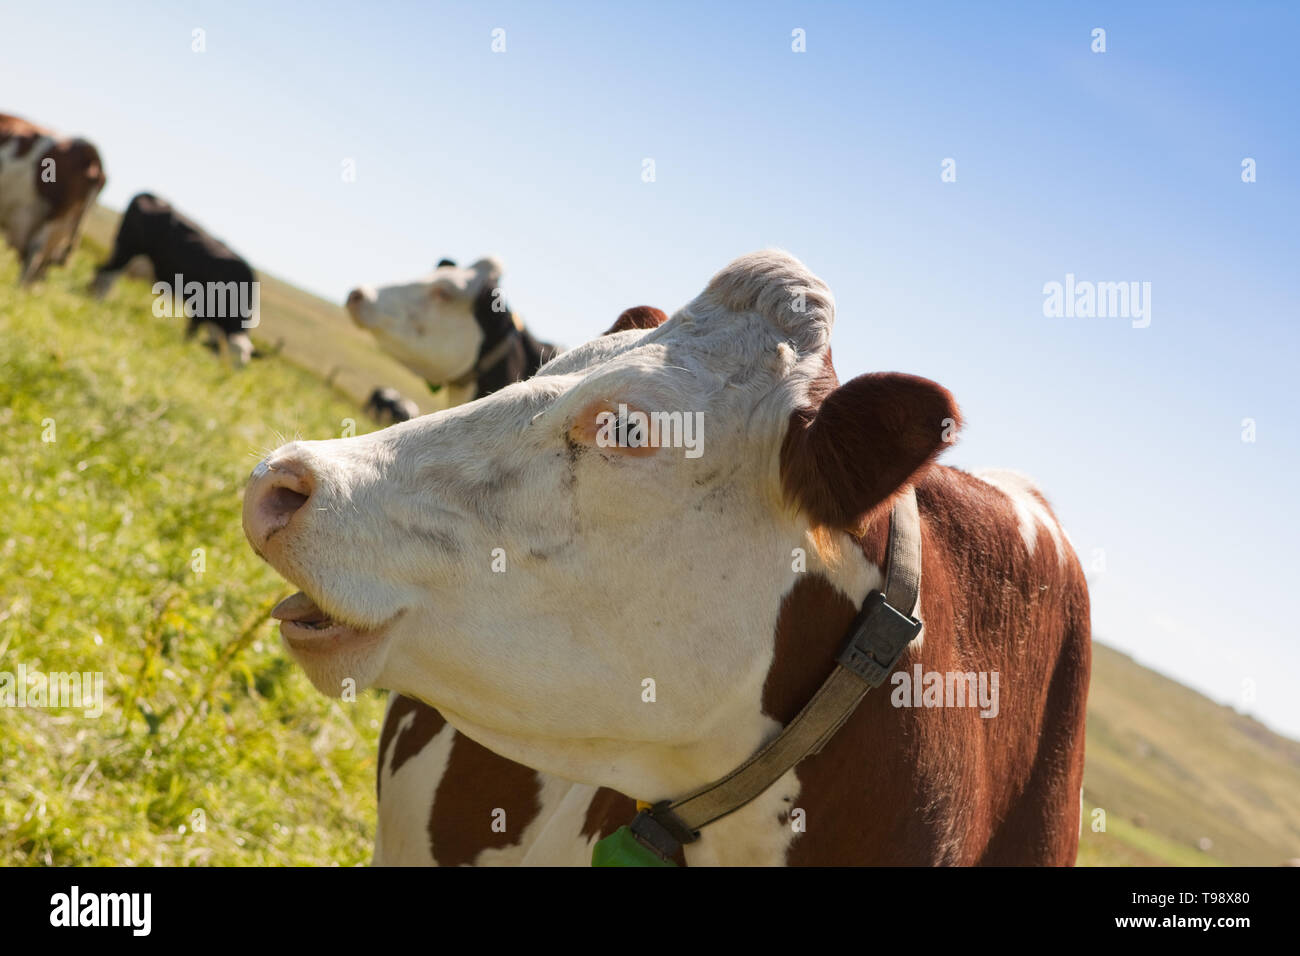 Les vaches photographiées dans un champ contre un ciel bleu dans les îles Shetland, au nord de l'Écosse, au Royaume-Uni. Banque D'Images